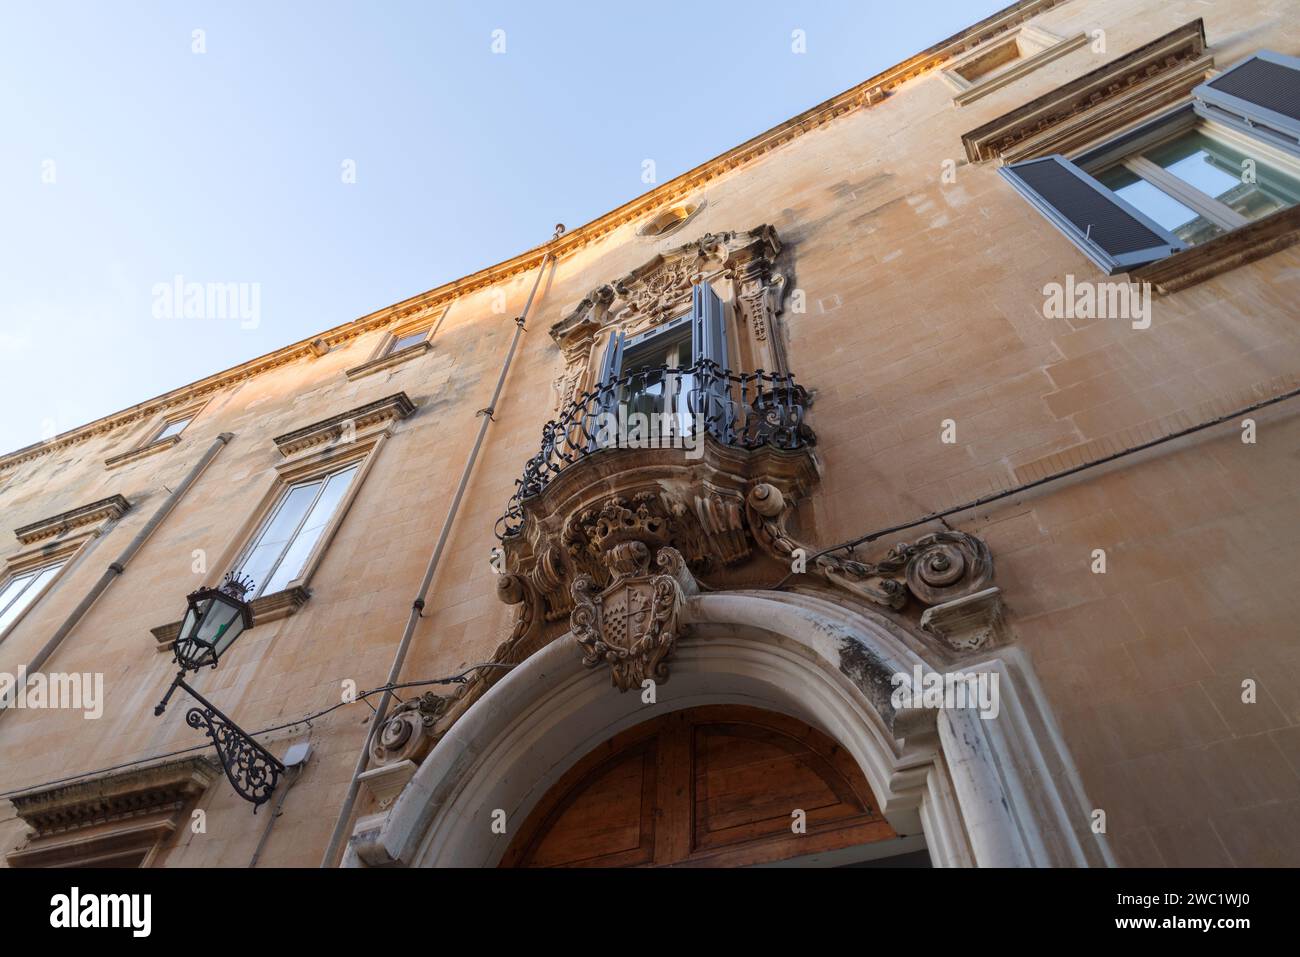 Decorazione in pietra intagliata in stile barocco sulla facciata. Lecce, Puglia, Italia Foto Stock